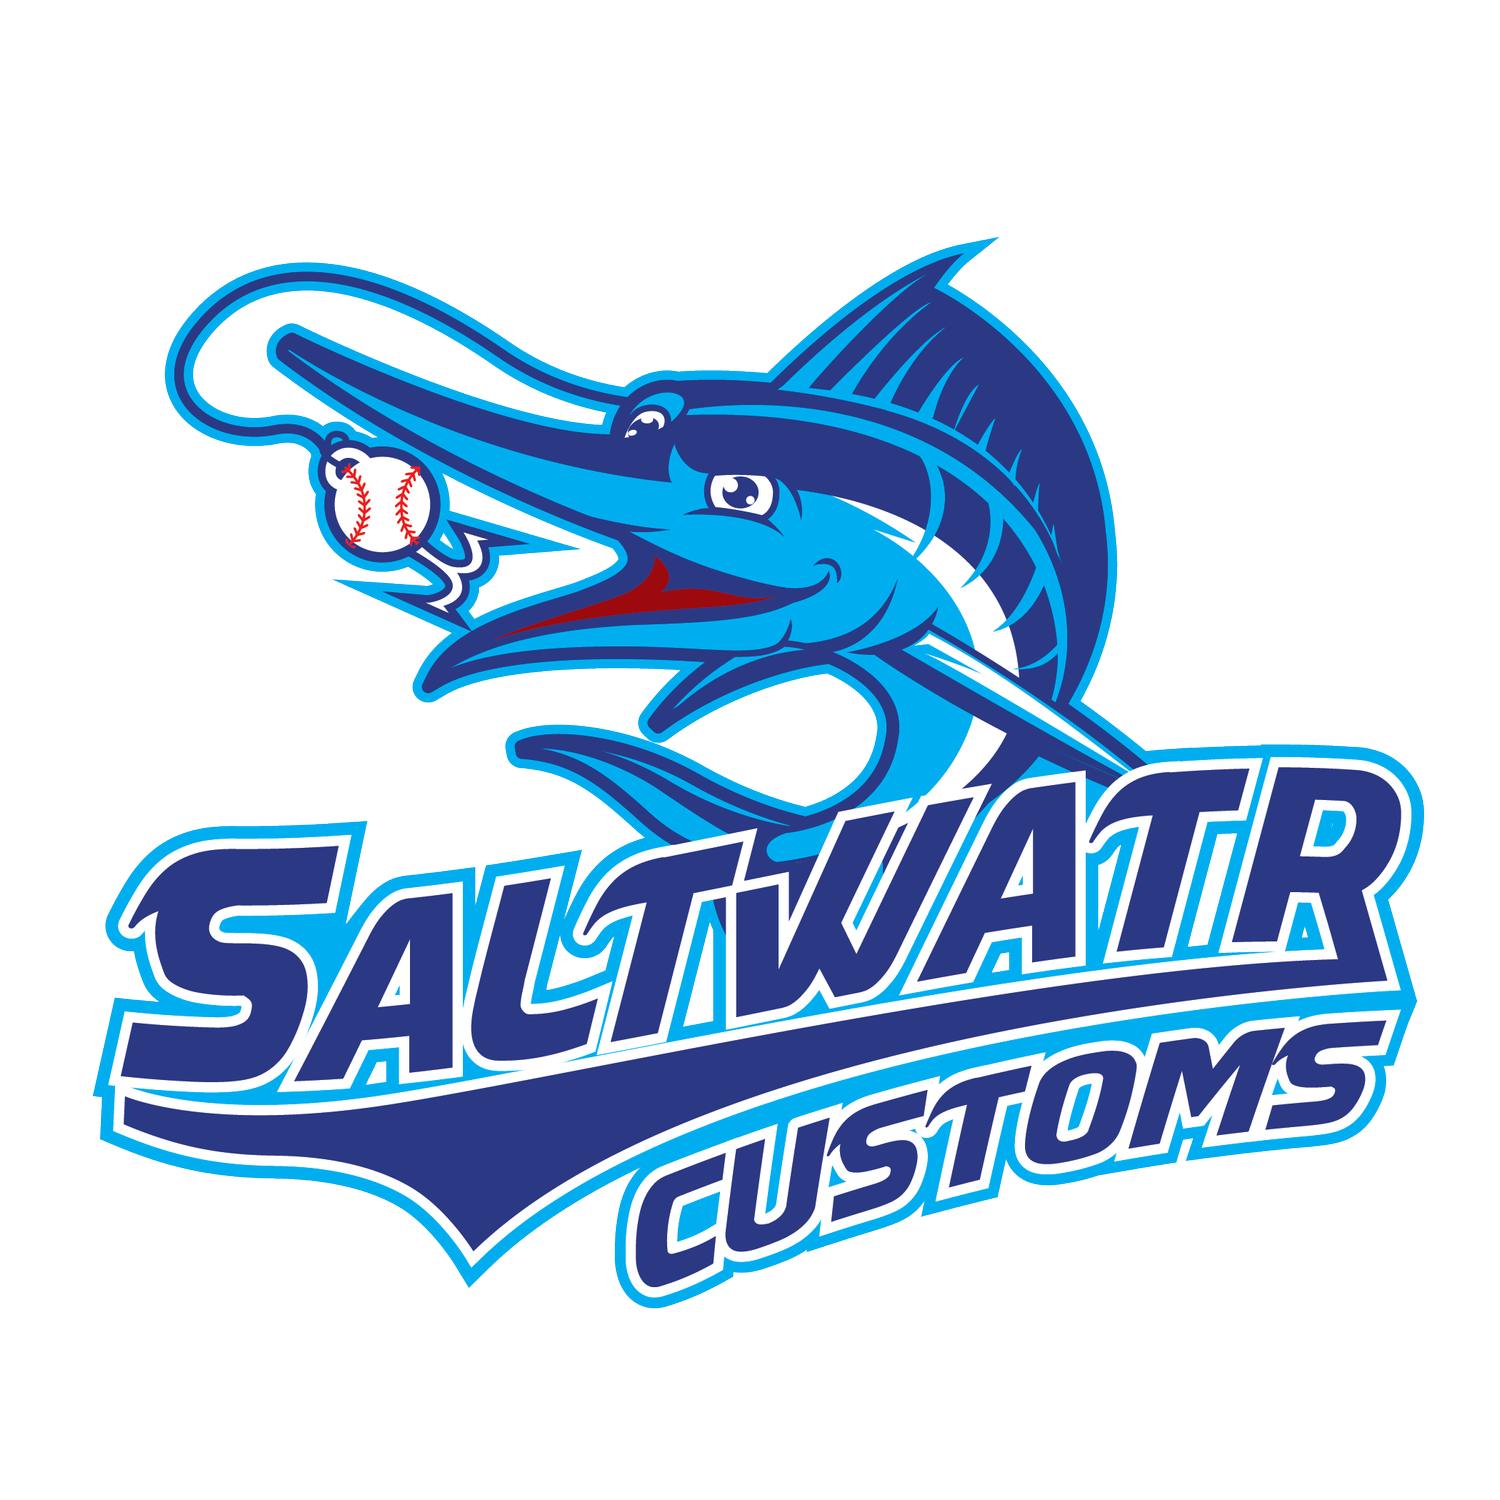 Saltwatr Customs